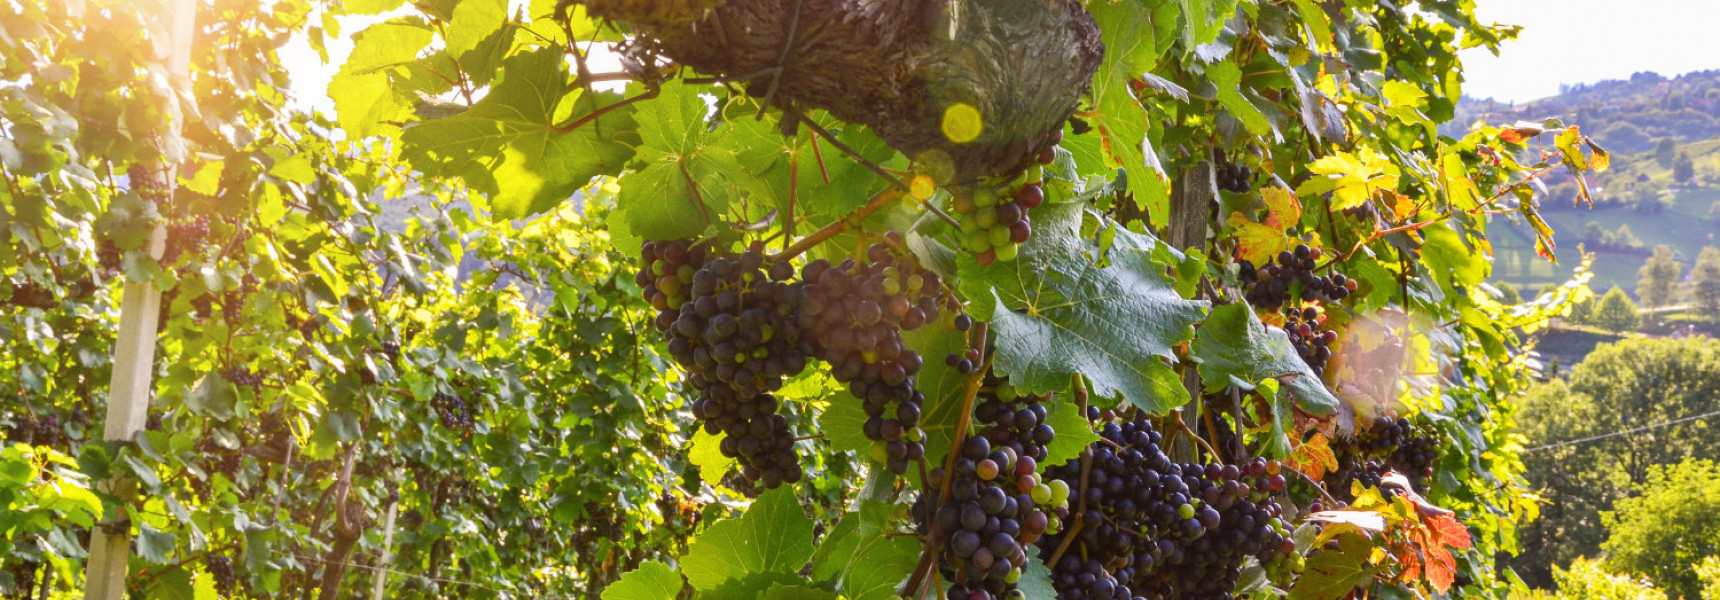 8 of the Best Wine Regions in Spain